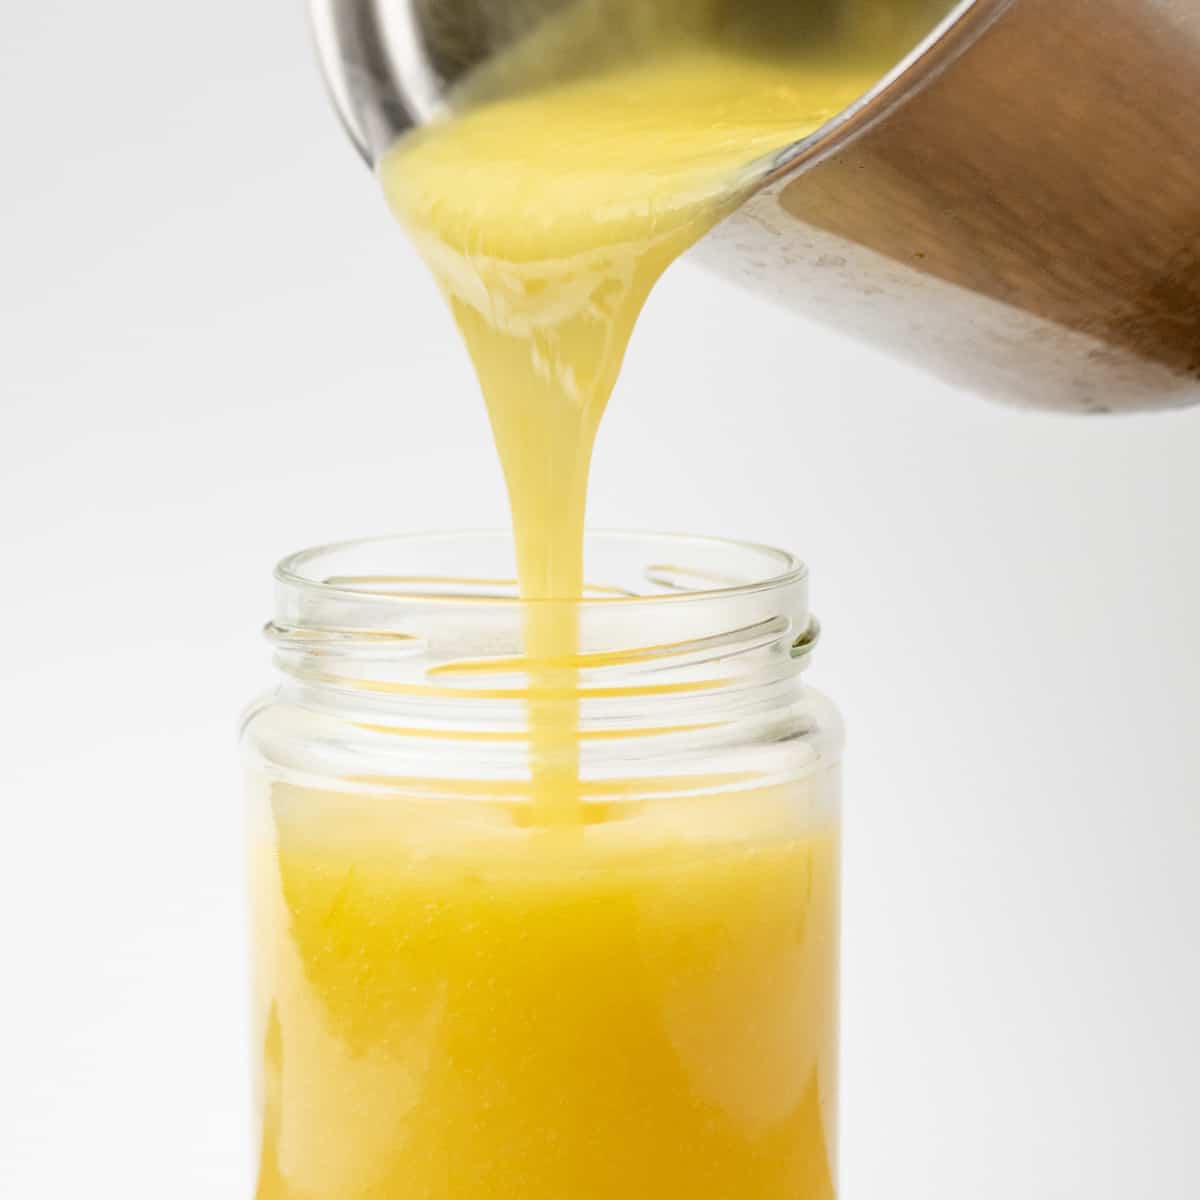 Ζεστό τυρόπηγμα λεμονιού χύνεται από μια κατσαρόλα σε ένα βάζο.